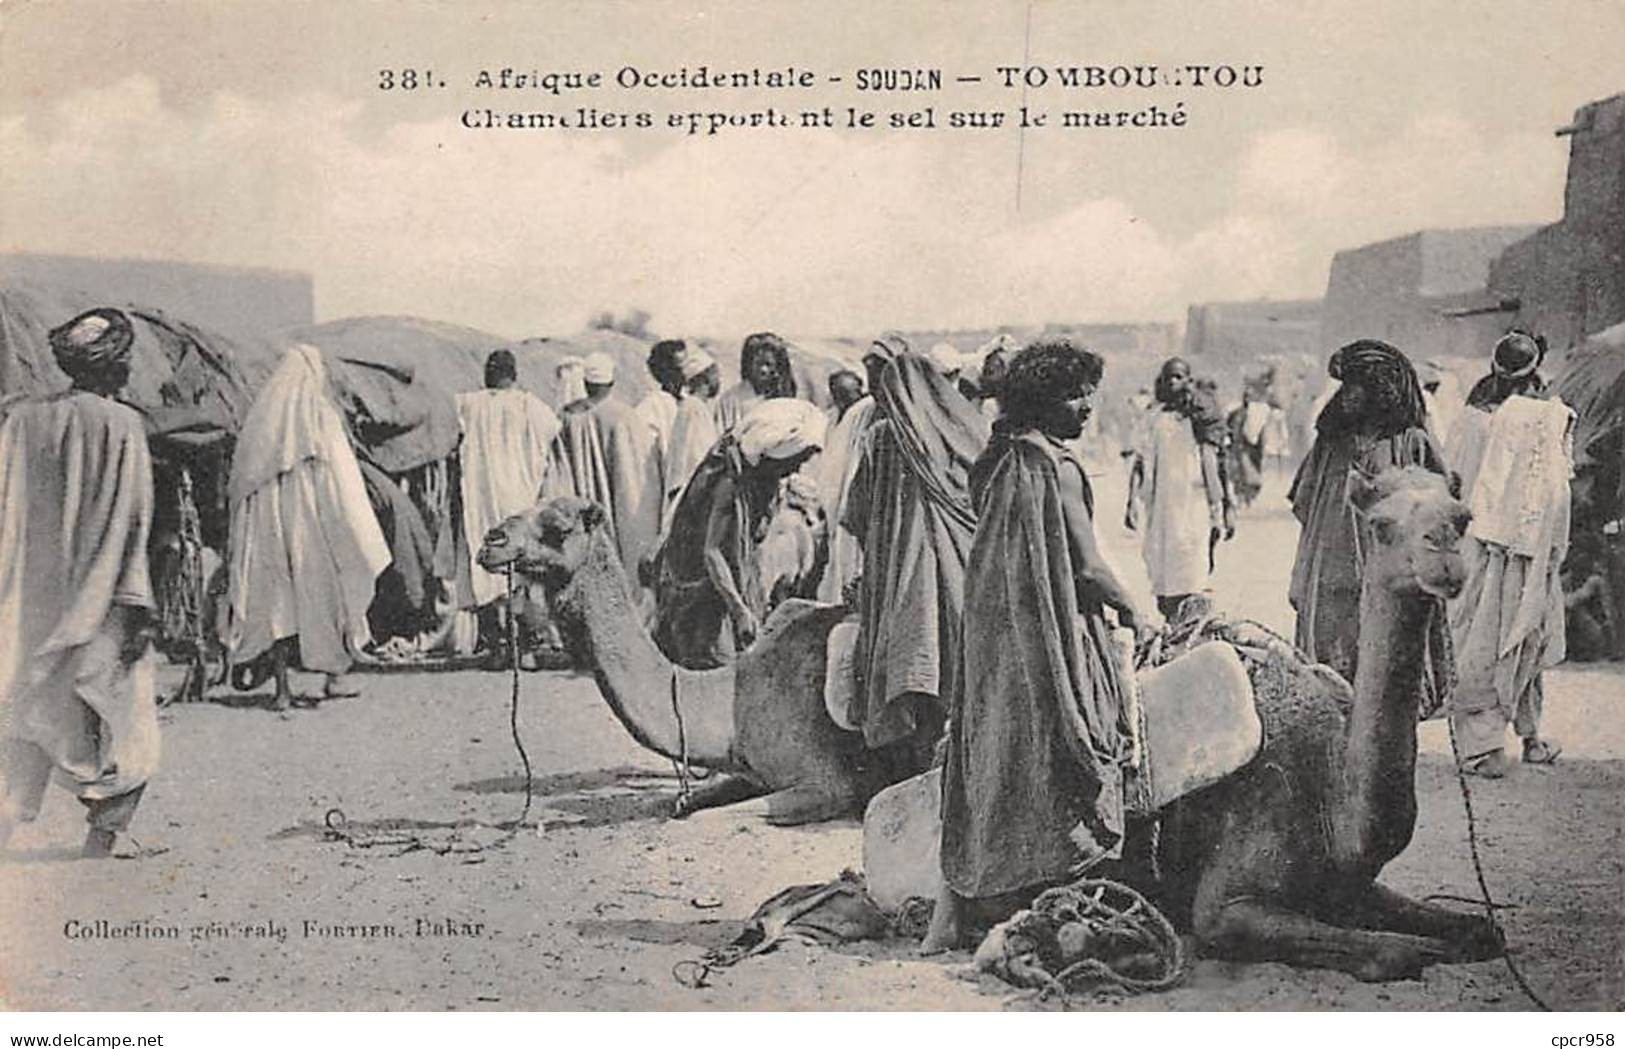 SOUDAN - SAN56492 - Afrique Occidentale - Tombouctou - Chameliers Apportant Le Sel Sur Le Marché - Métier - Sudan